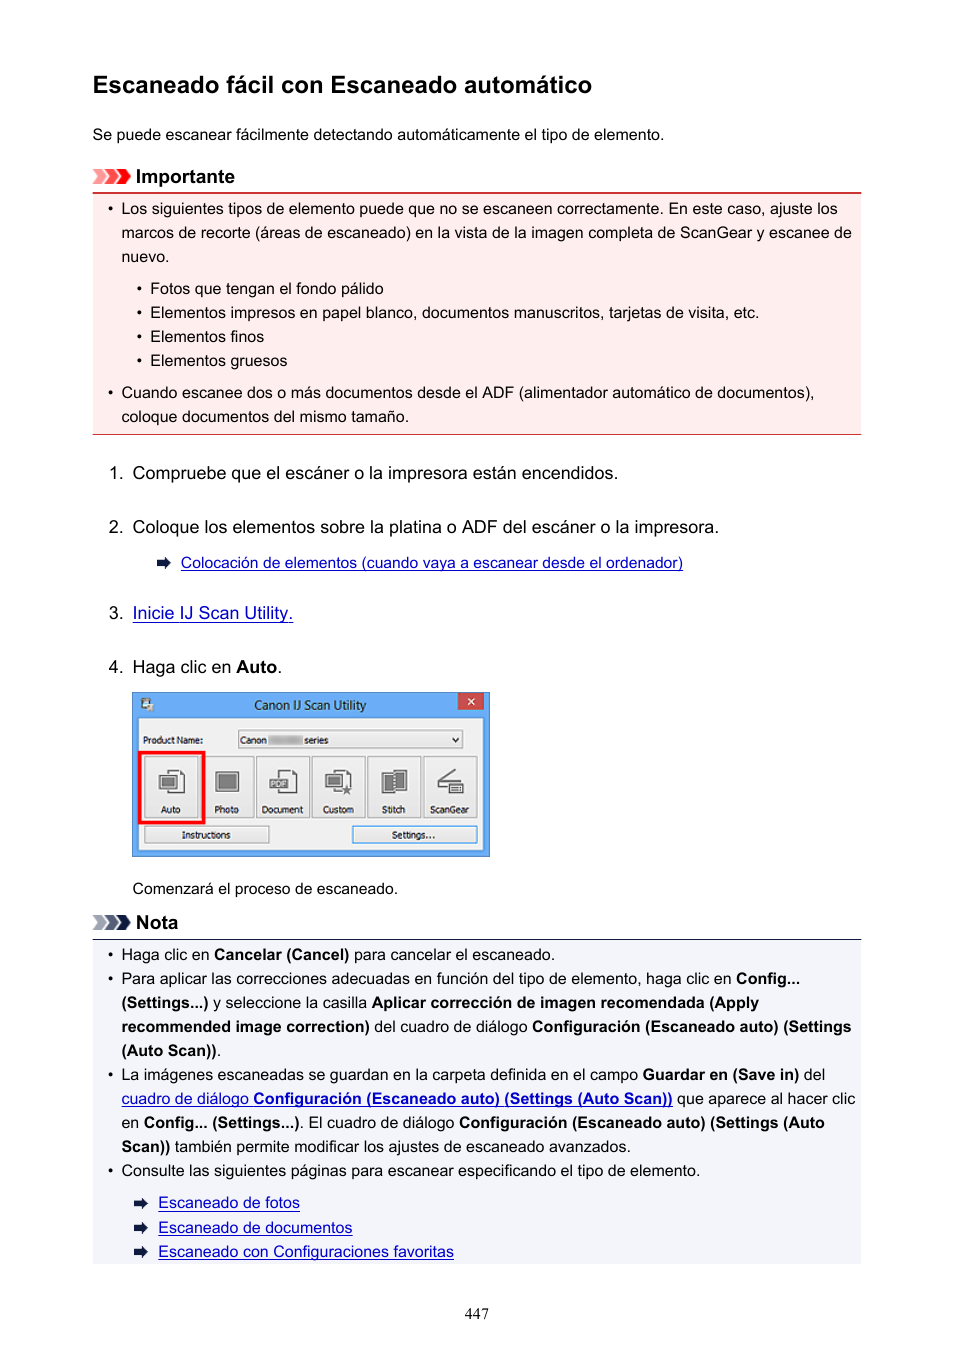 Escaneado fácil con escaneado automático | Canon PIXMA MX475 Manual del usuario | Página 447 / 973